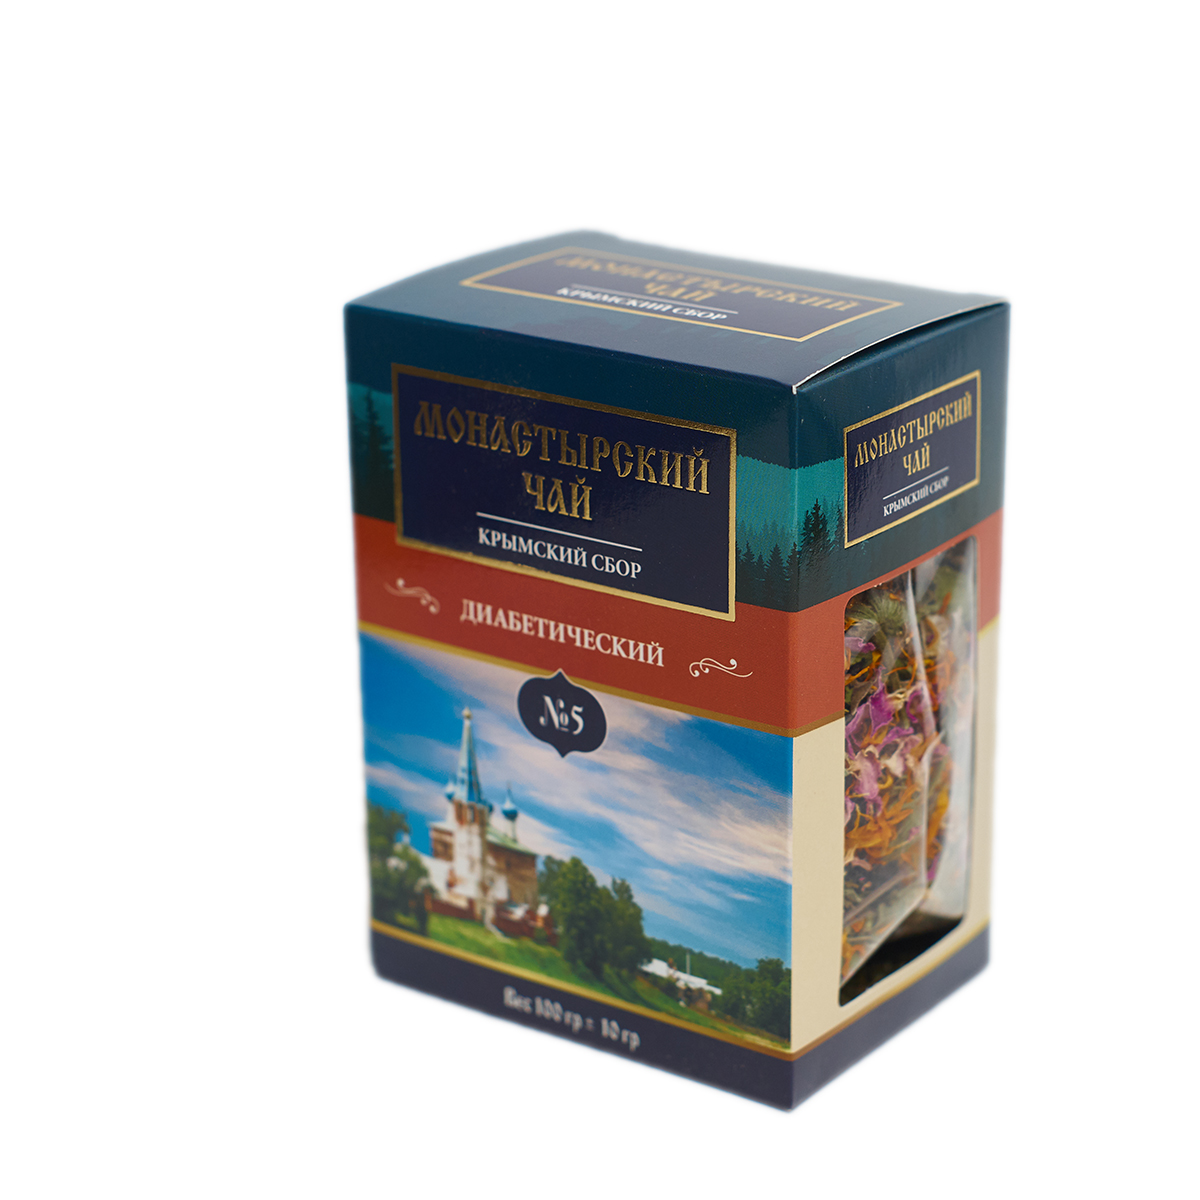 Чай травяной Монастырский №5 Диабетический, 100 г